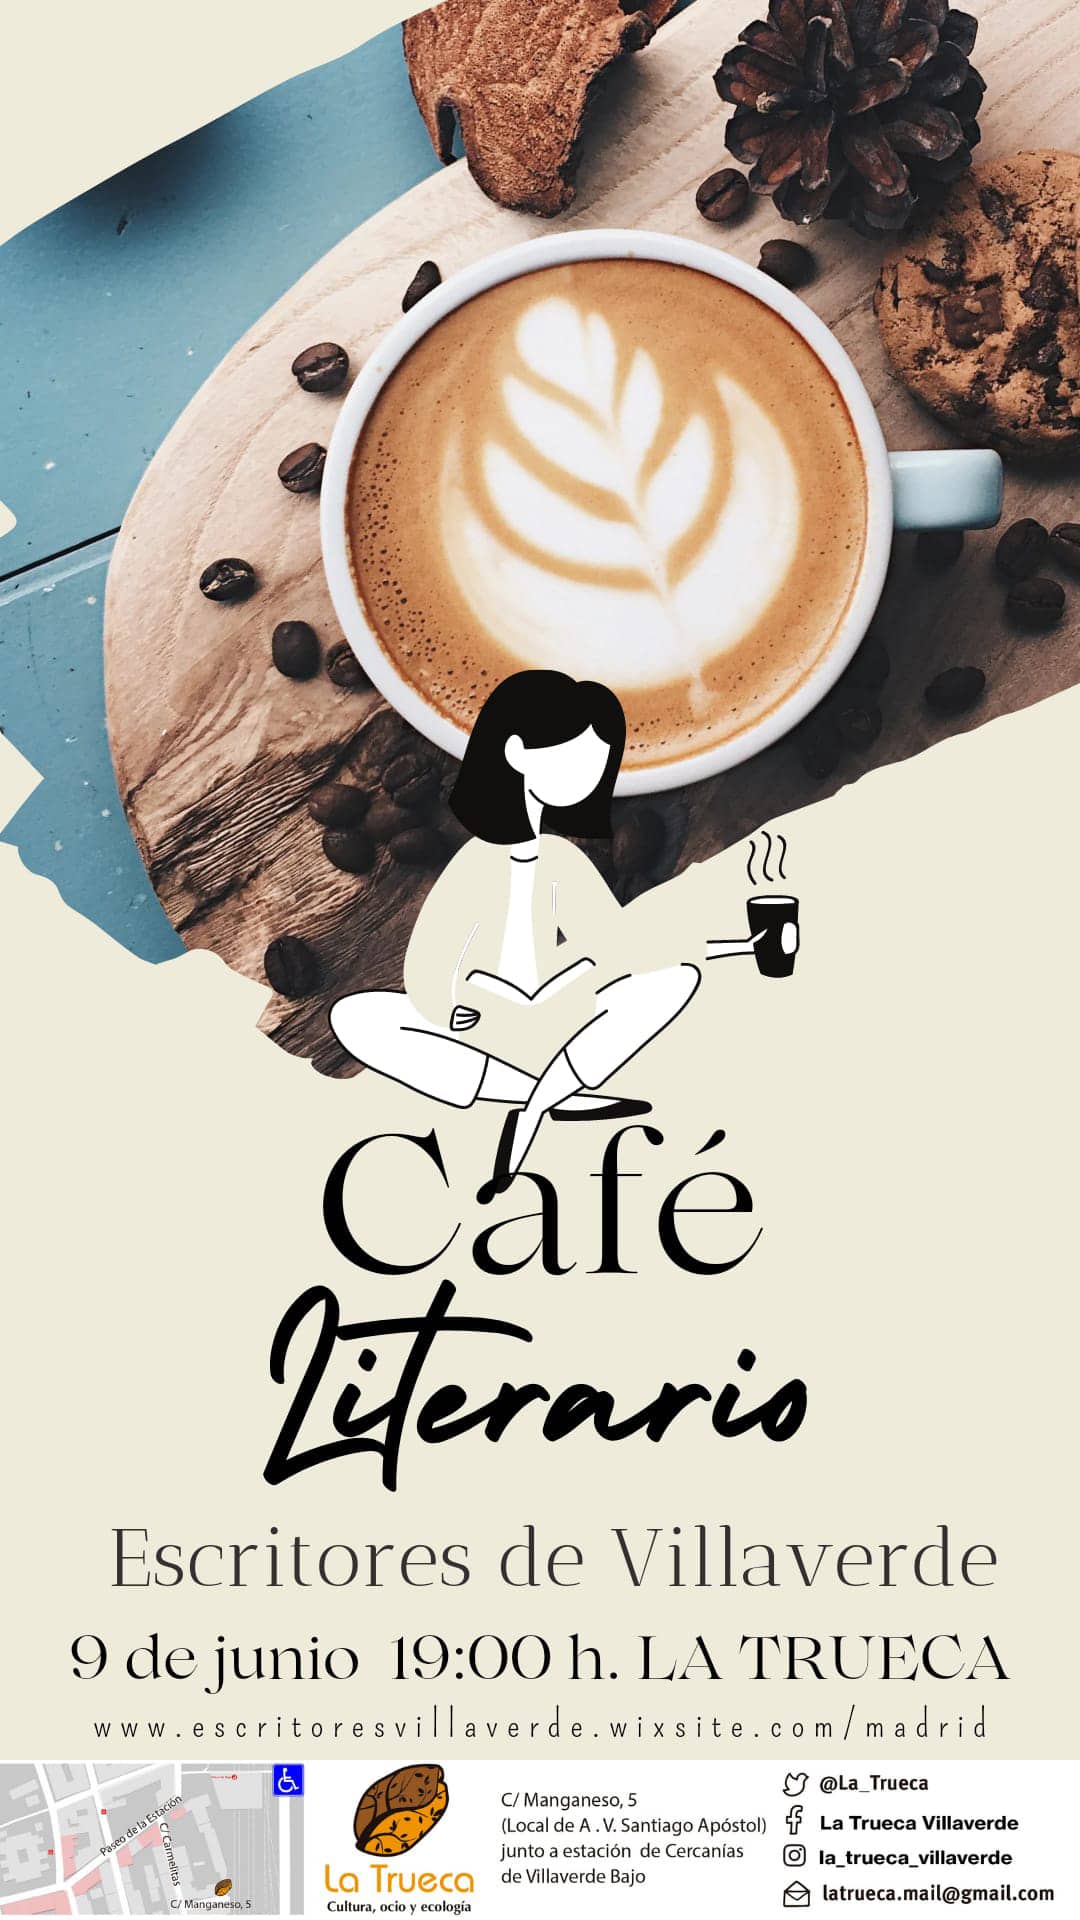 ‘Café literario’ con Escritores de Villaverde